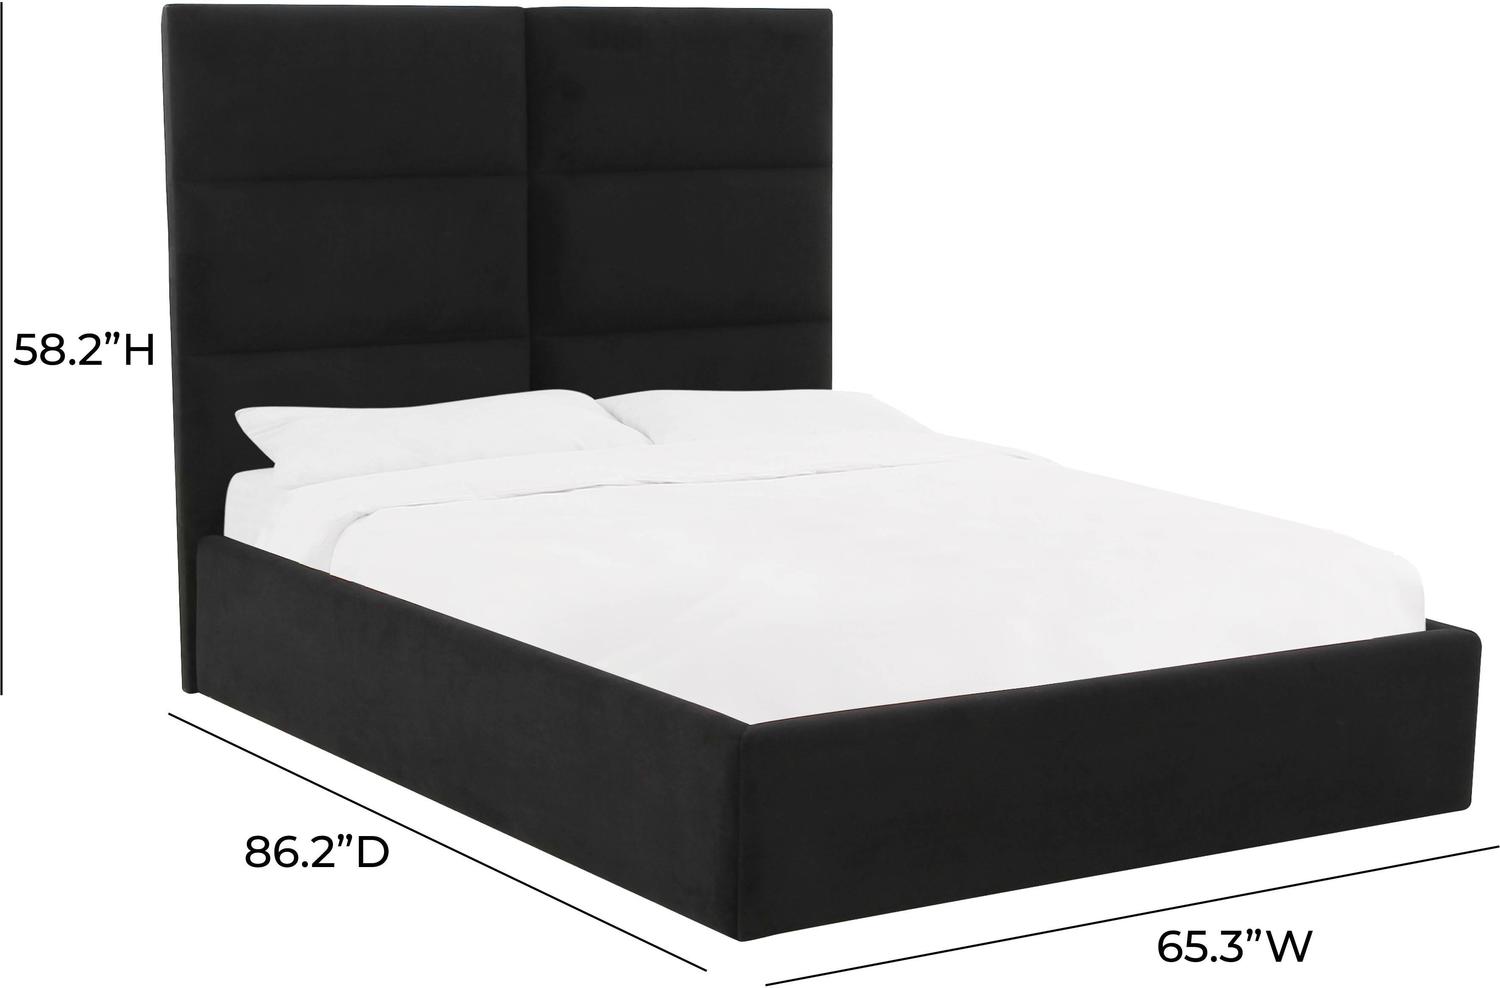 grey king bed frame with storage Tov Furniture Beds Black